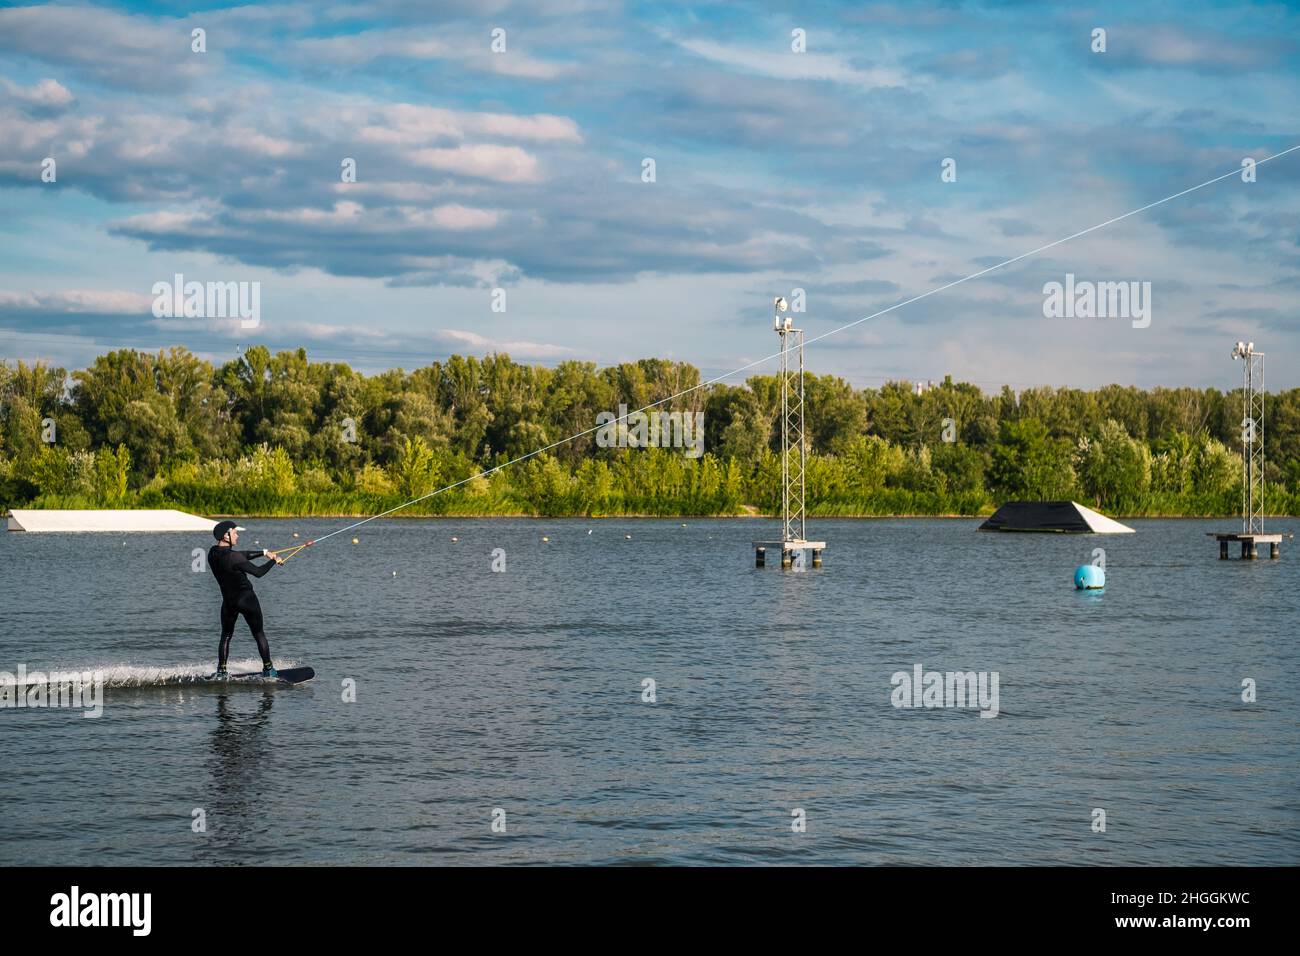 Fokussierter, sportlicher Mann, der auf dem Wakeboard auf dem Kabel auf dem ruhigen Fluss fährt Stockfoto